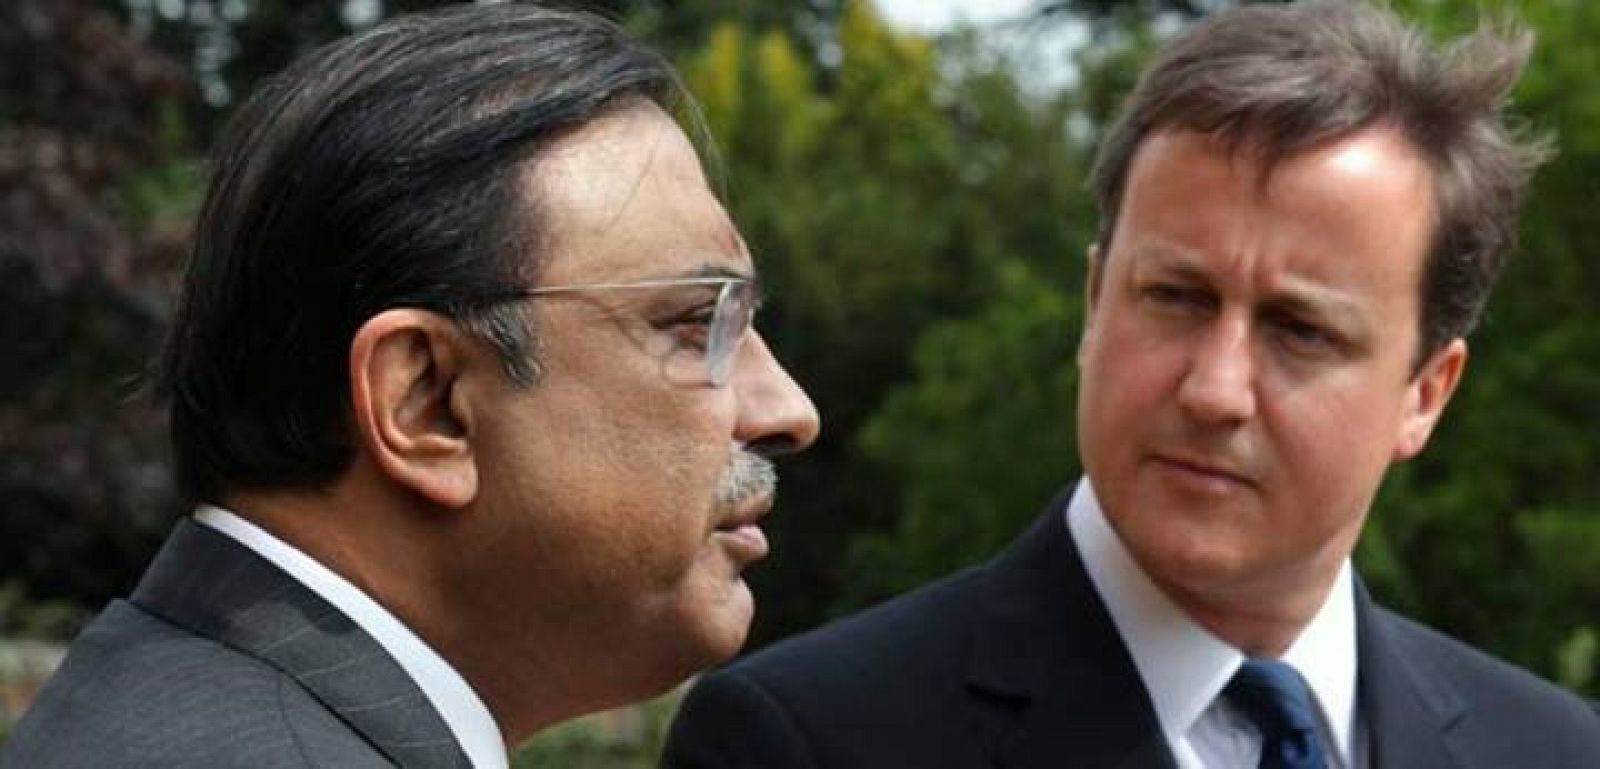 Zardari ha visitado el Reino Unido a pesar de las inundaciones en su país